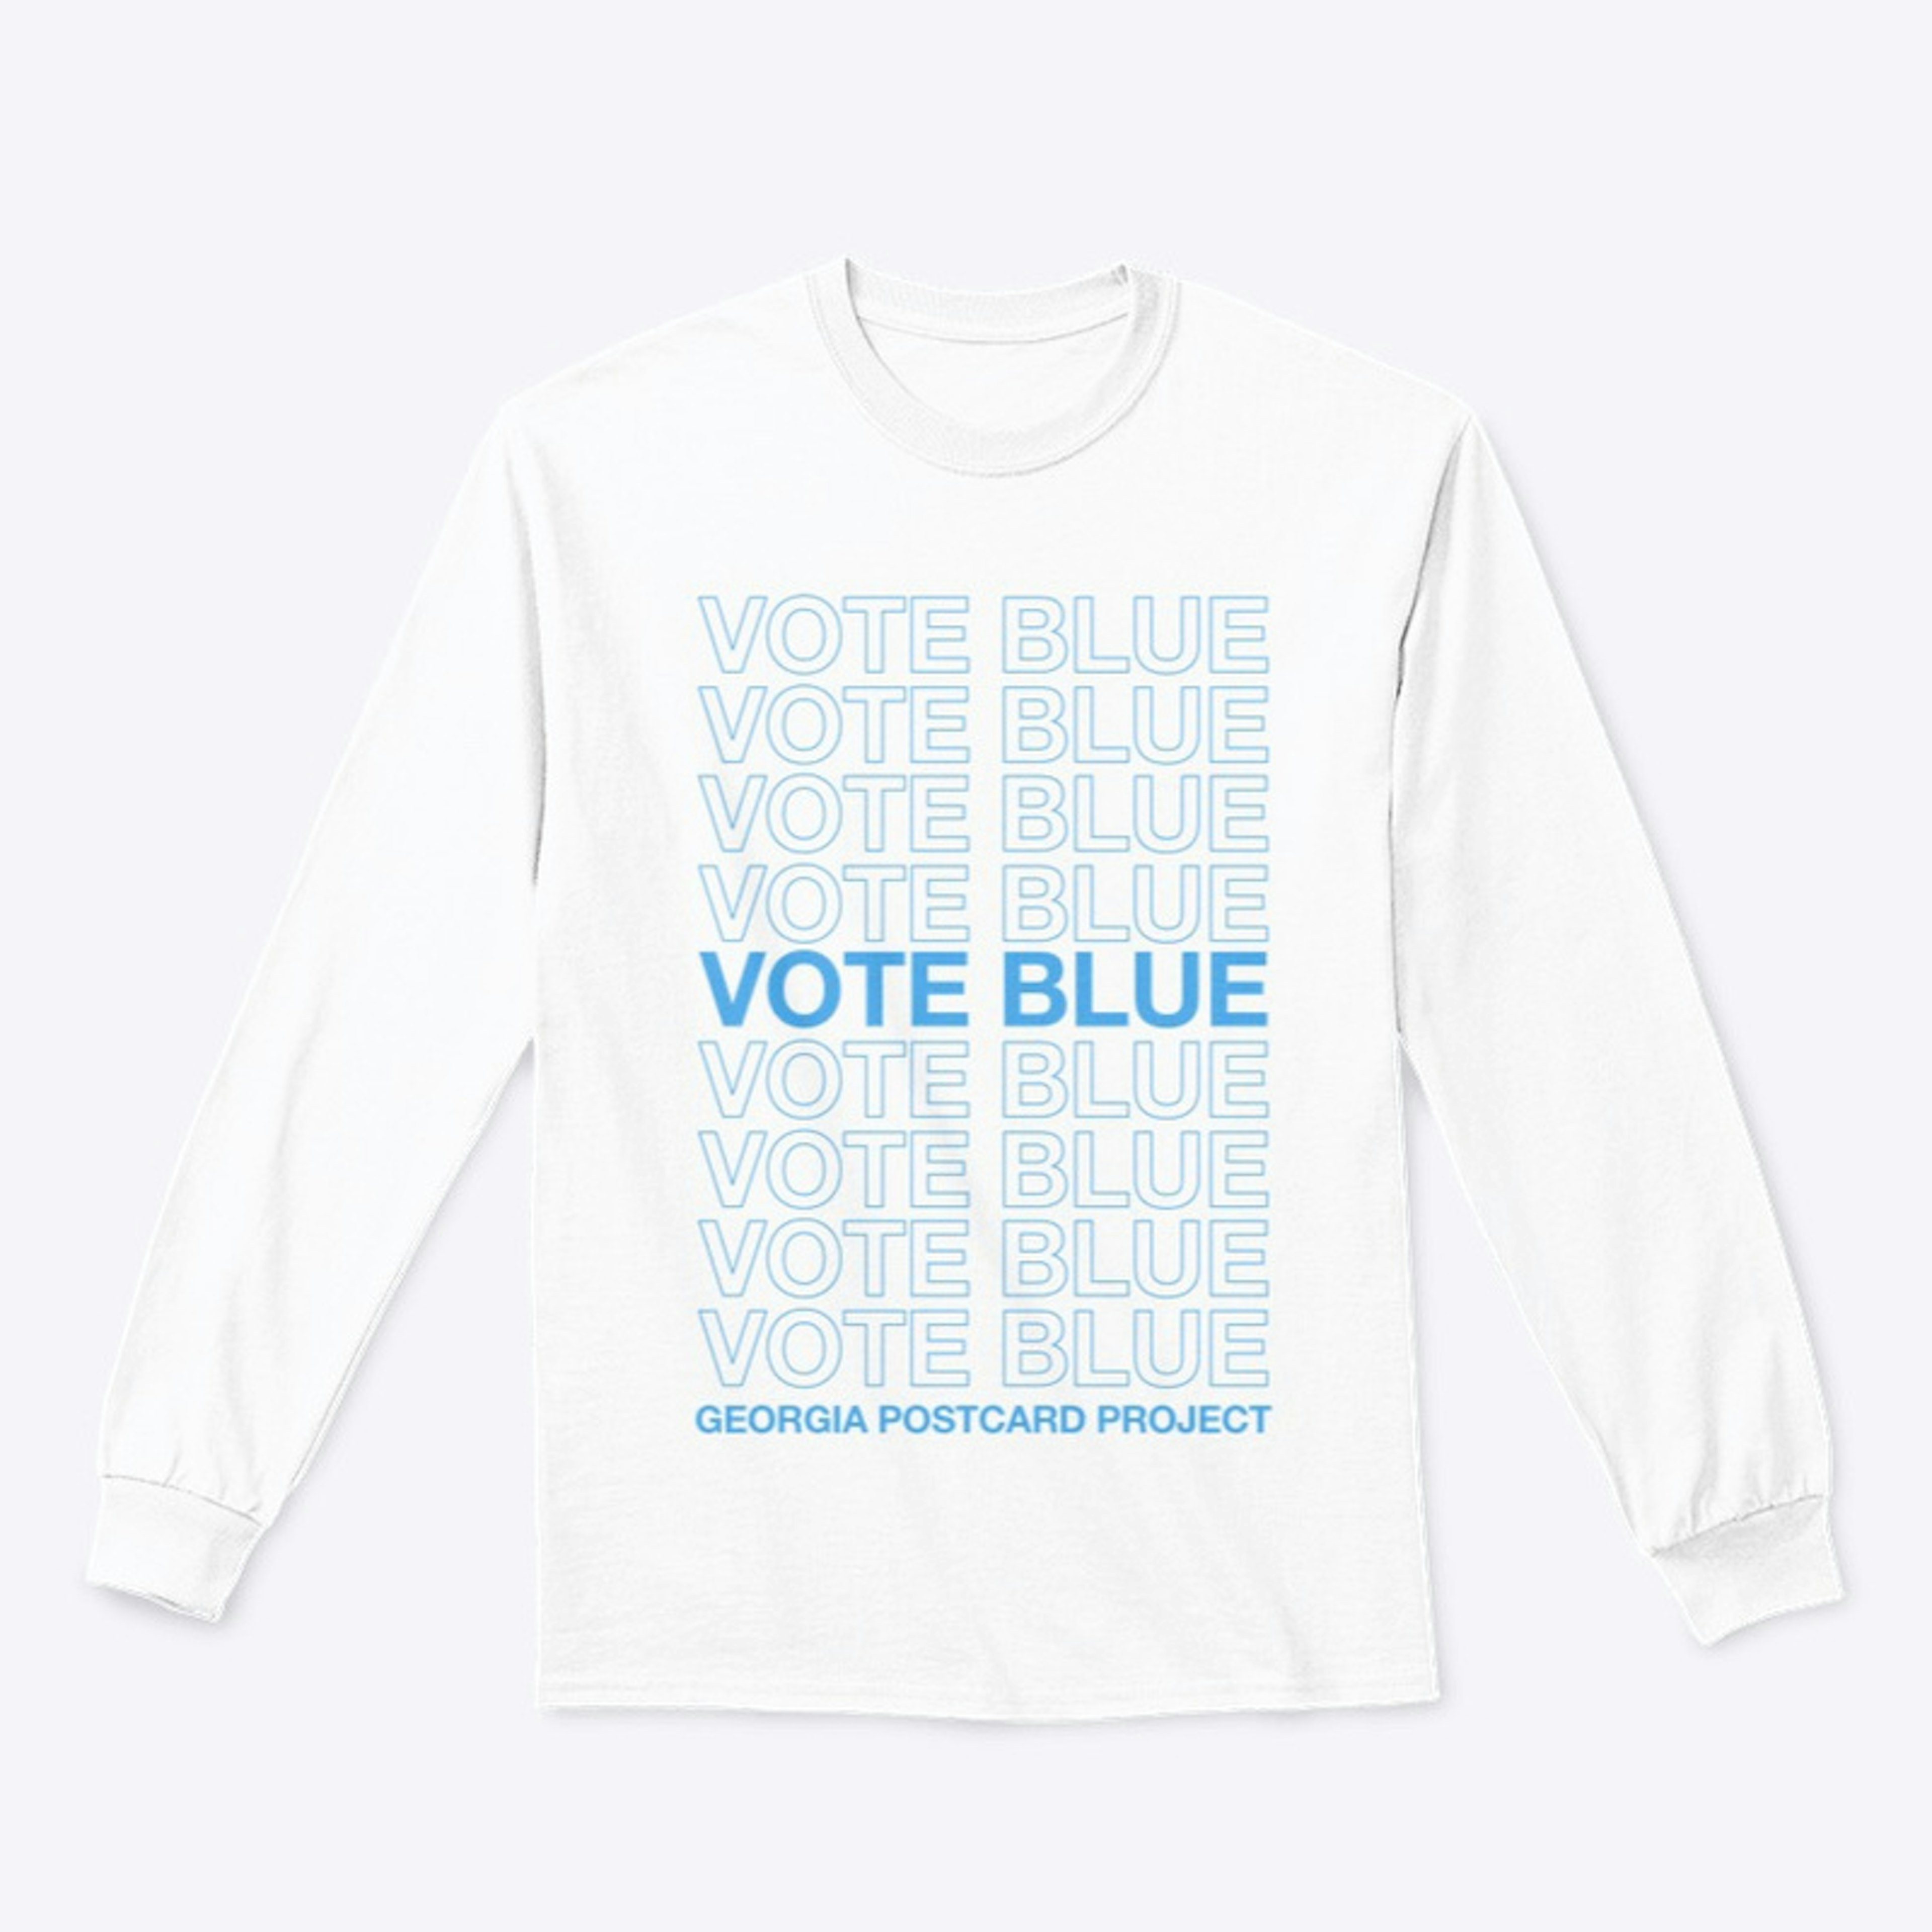 VOTE BLUE - Classic Design